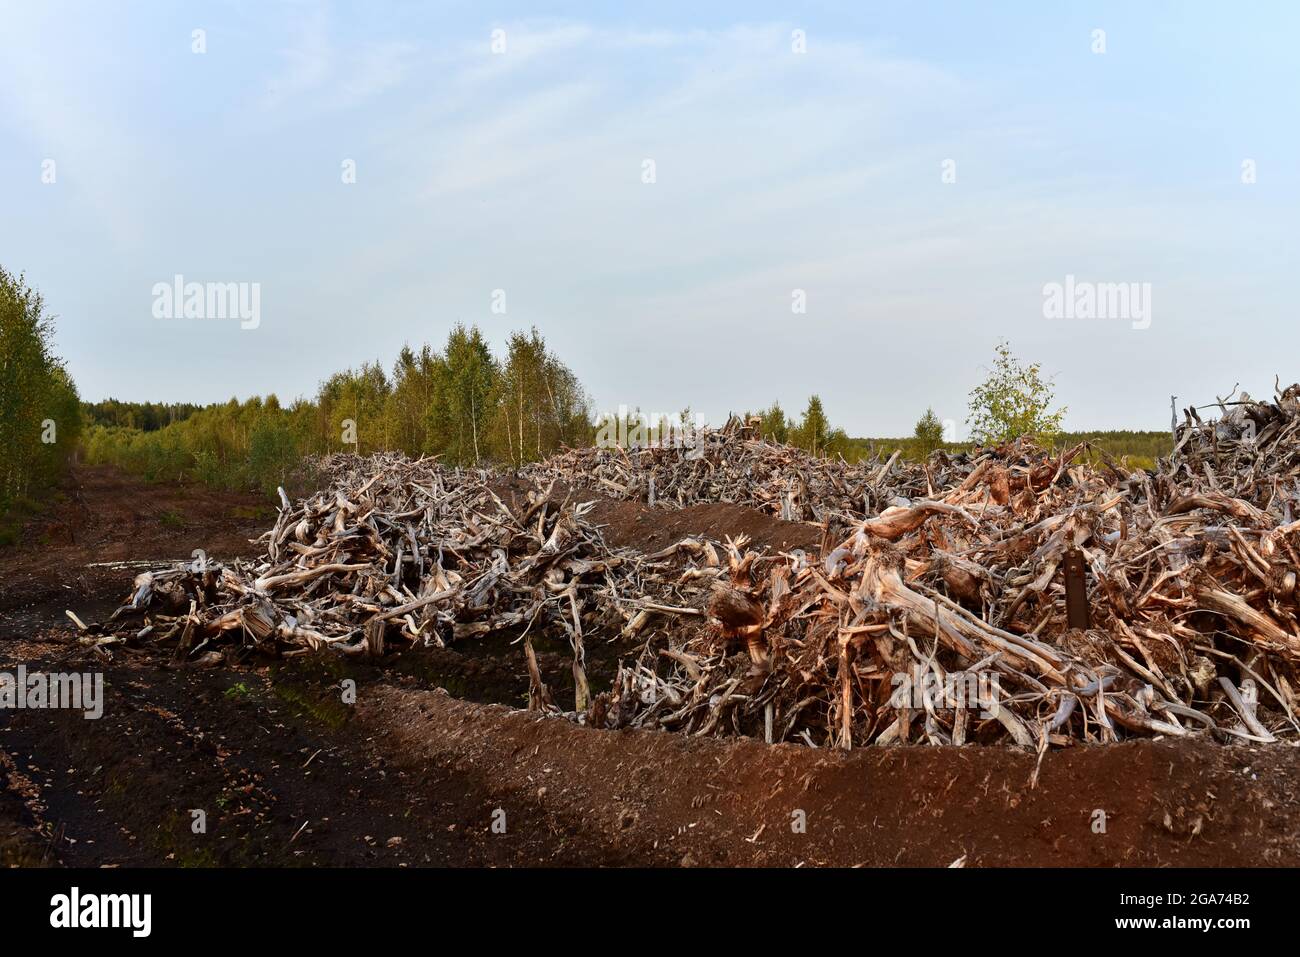 Pila de raíces de madera. Raíz del árbol de las turberas. Raíces de árboles  después de drenar un pantano para la extracción de turba y aceite. Fondo de  madera gris de muertos